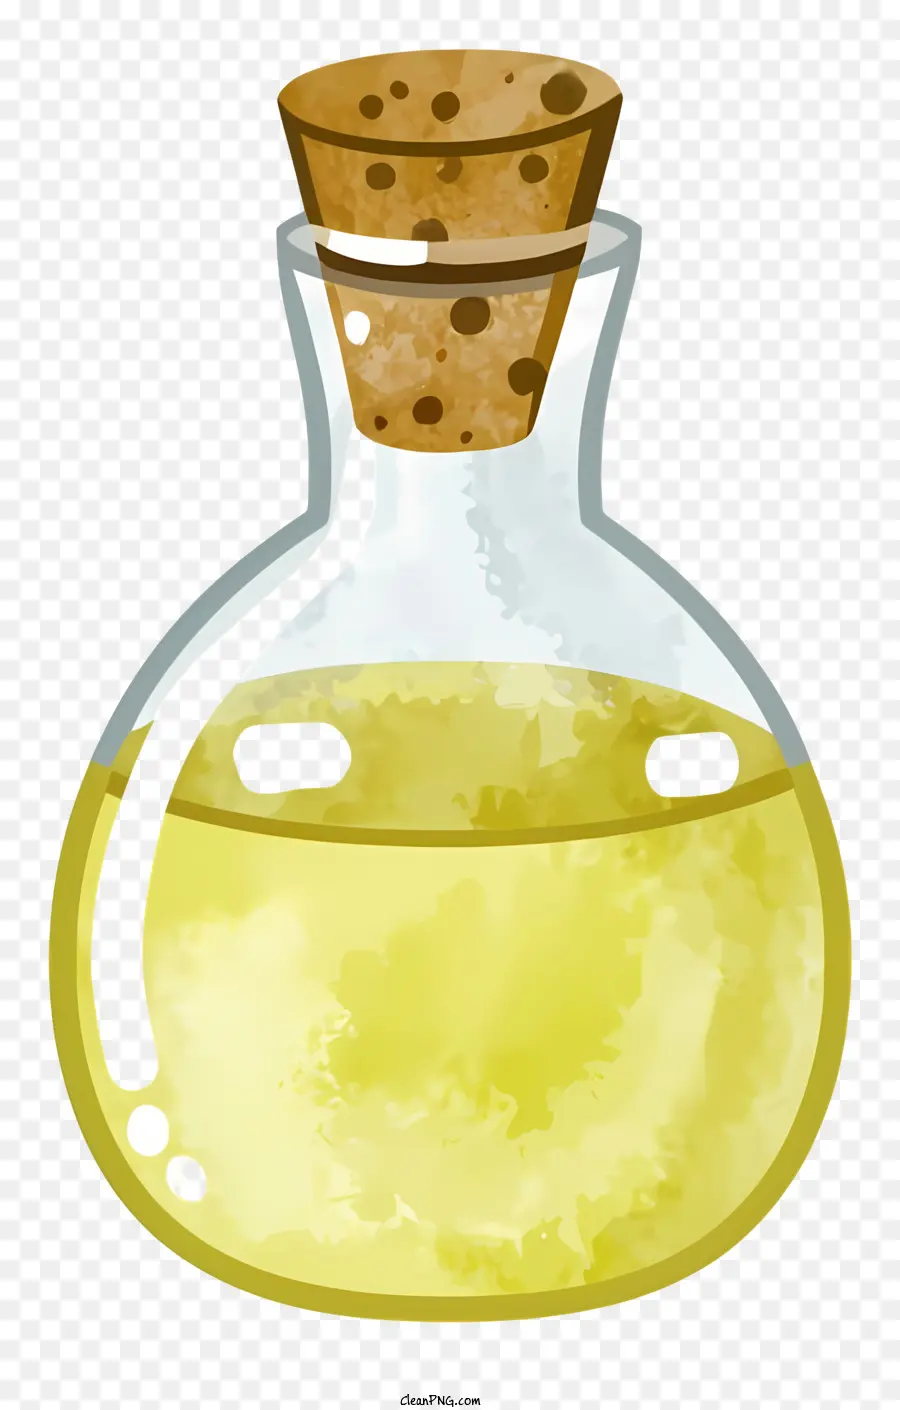 Chai thủy tinh hoạt hình Chai chất lỏng màu nâu - Tóm tắt: Hình ảnh của chai thủy tinh nhỏ với chất lỏng tối và nút chai